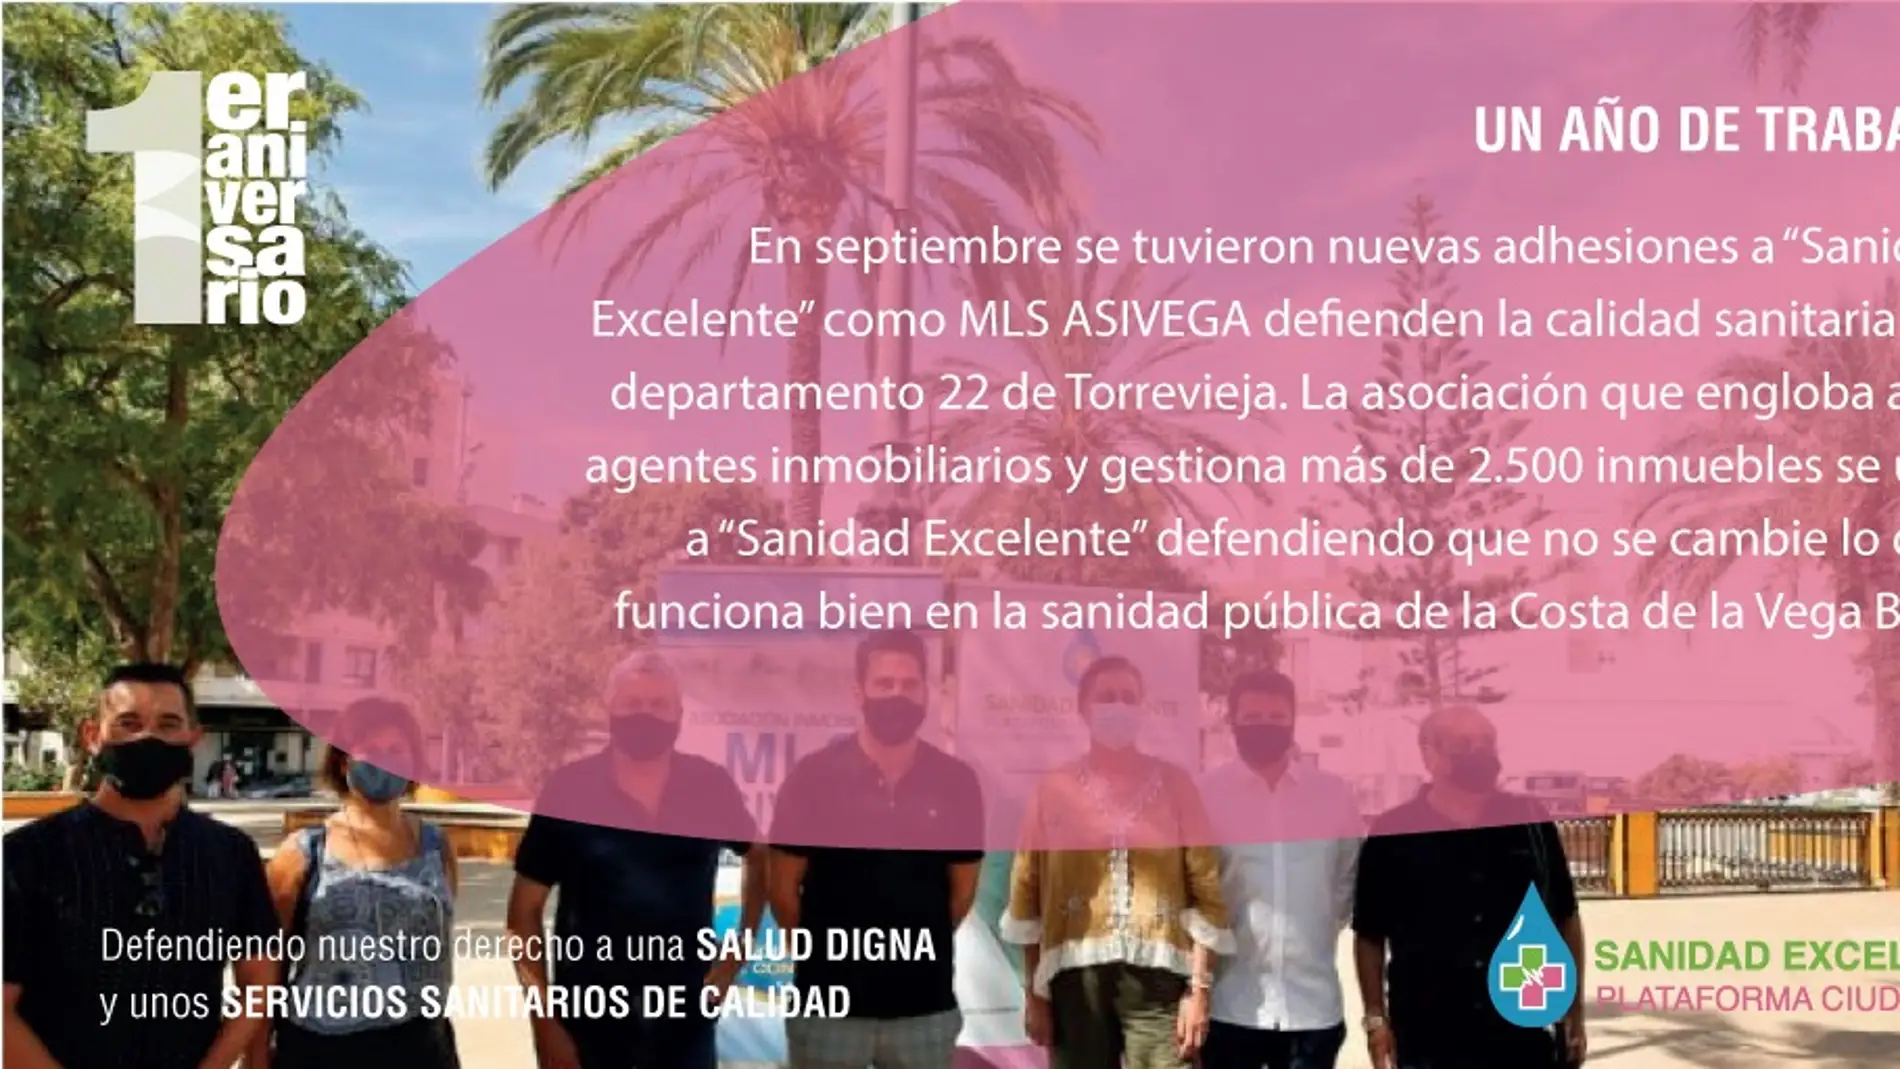 La plataforma ciudadana “Sanidad Excelente” cumple el primer aniversario desde su presentación oficial ante la ciudadanía del Sur de la Provincia de Alicante 